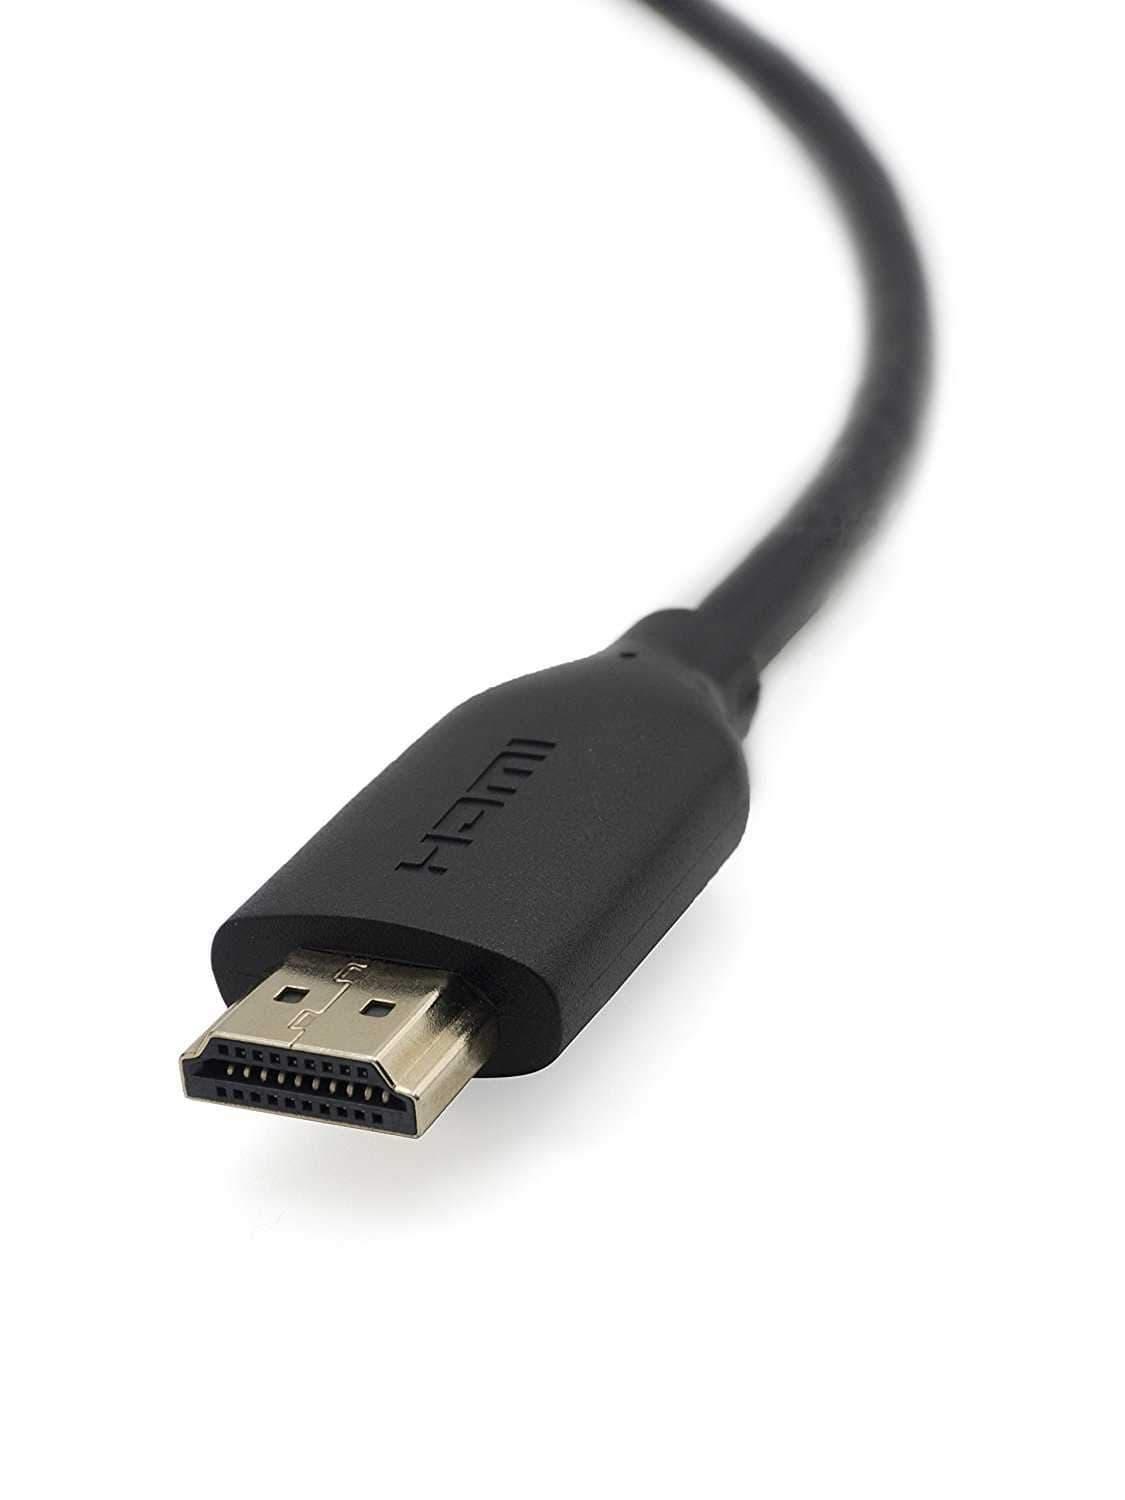 كيبل HDMI بيلكن Belkin High Speed HDMI 5m Cable